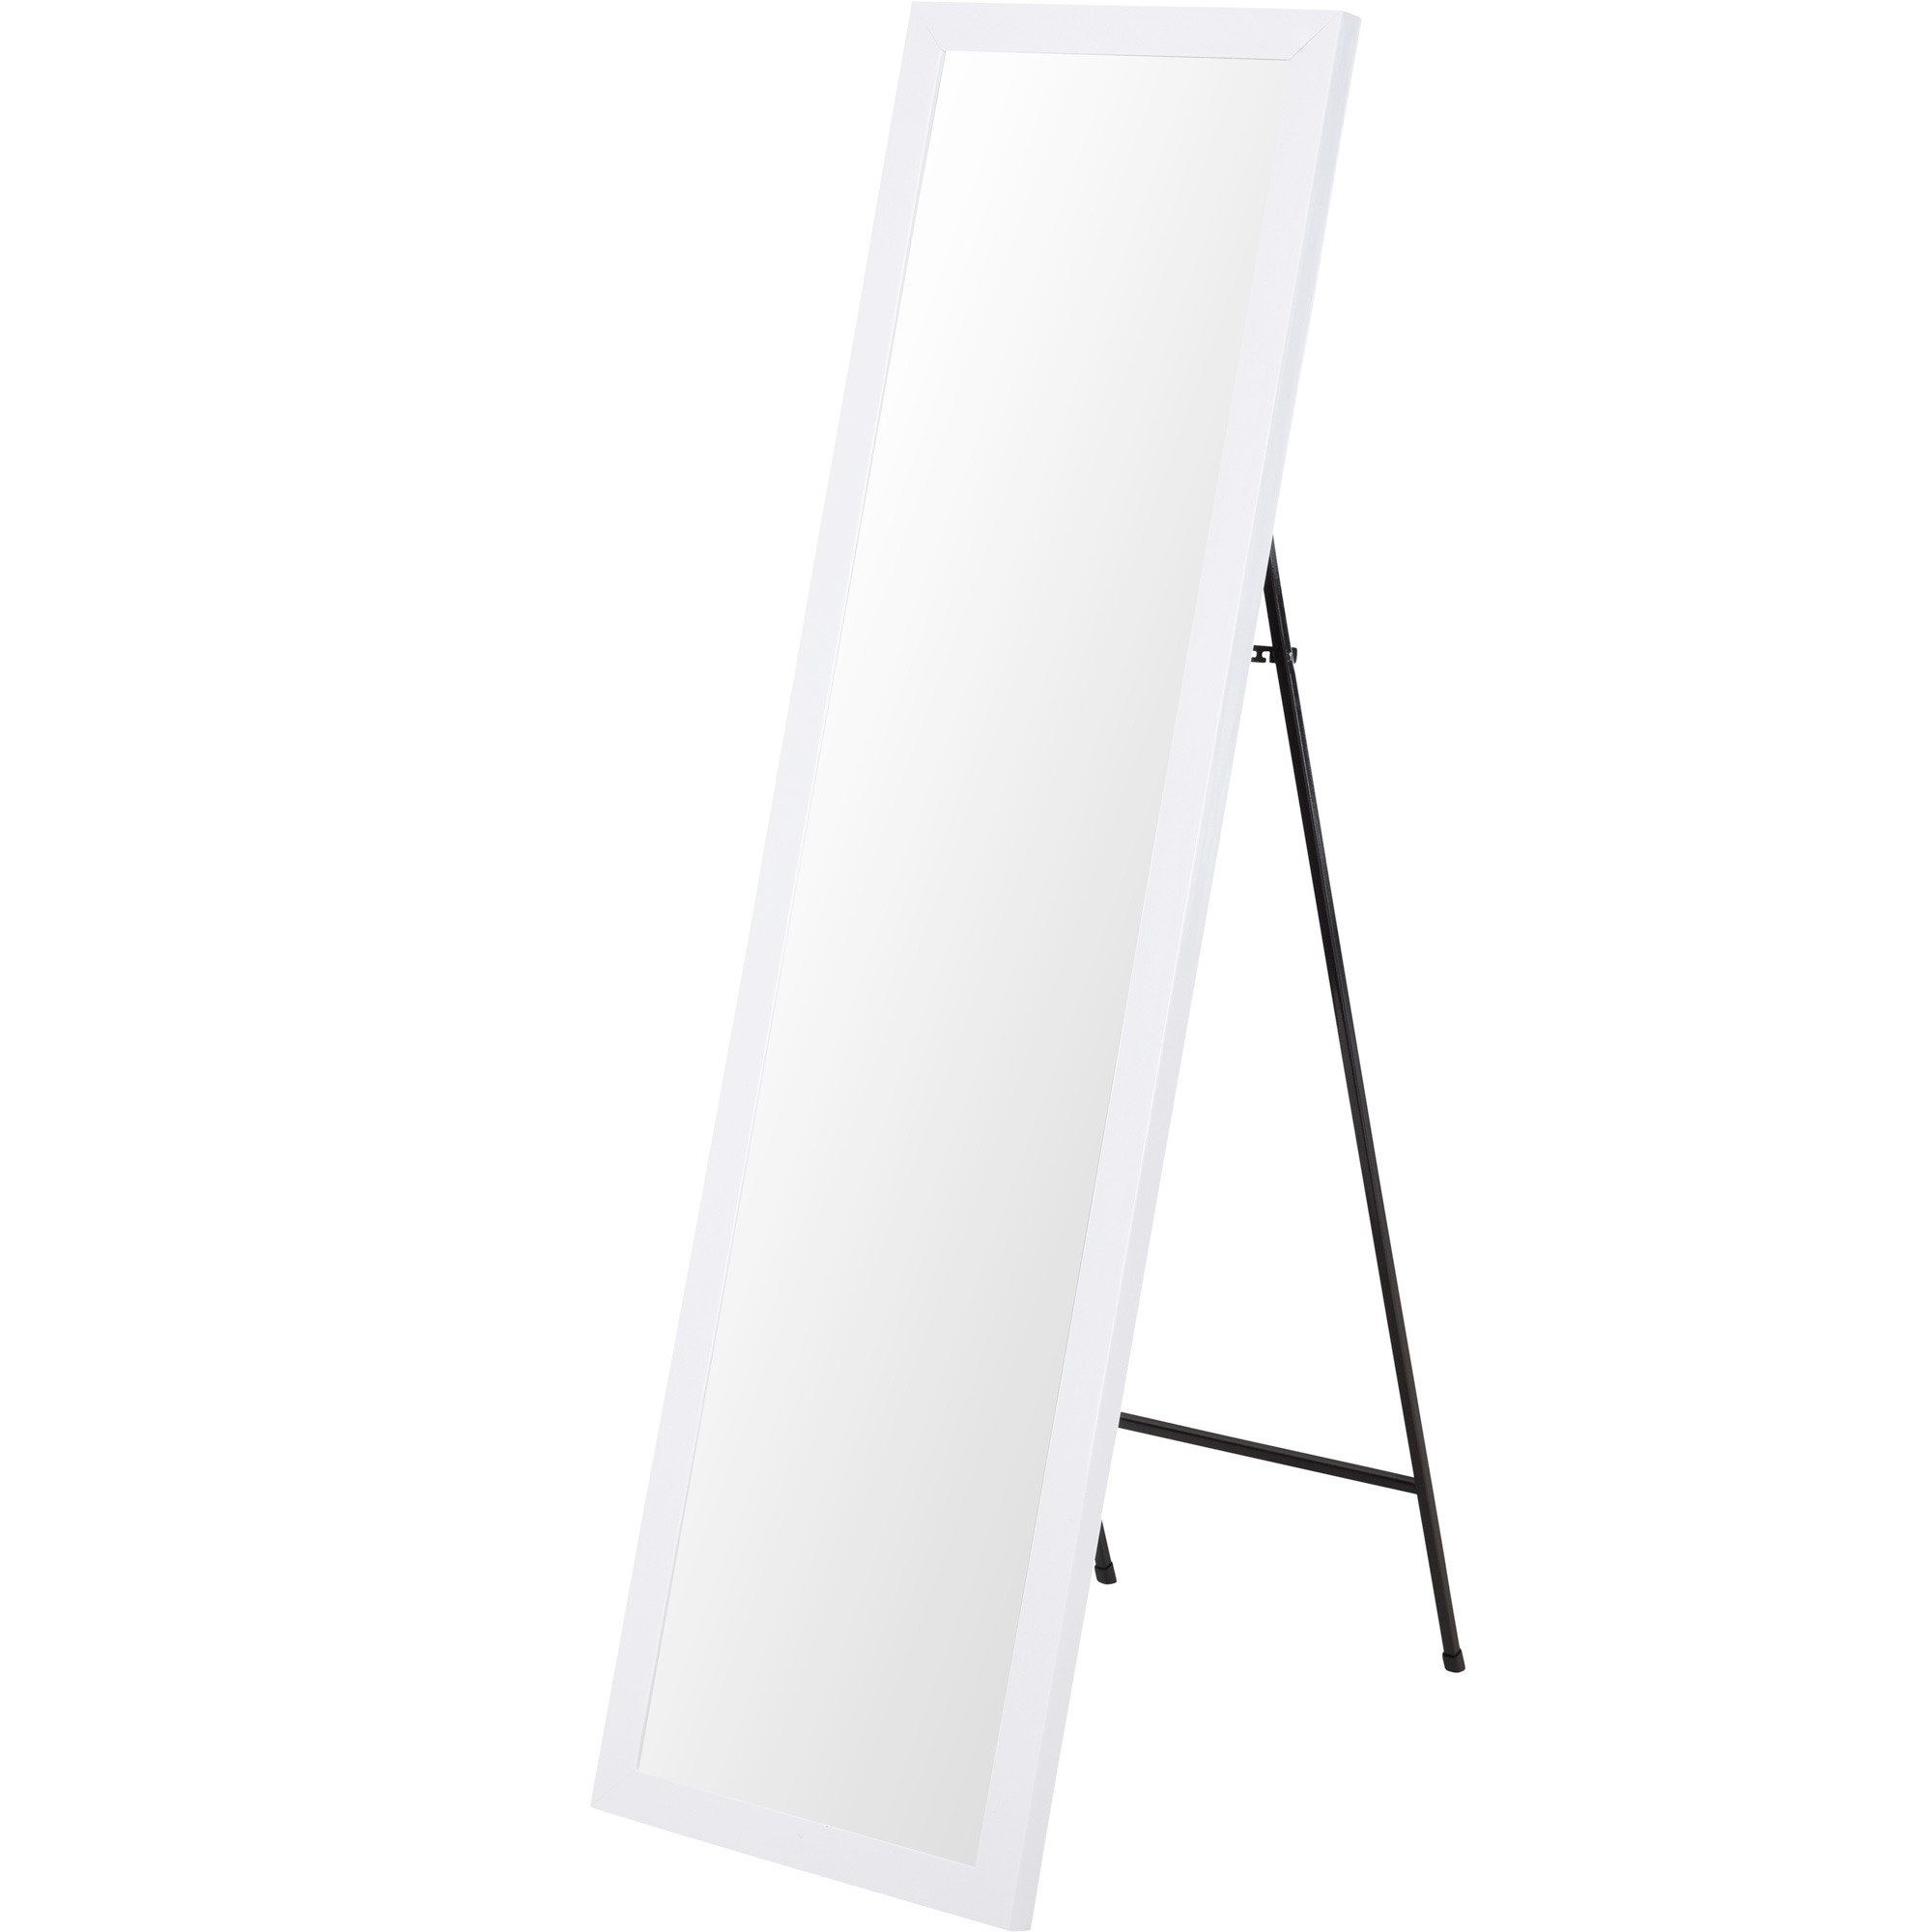 Home Styling Collection obdélníkové zrcadlo 126 cm, bílé - EMAKO.CZ s.r.o.